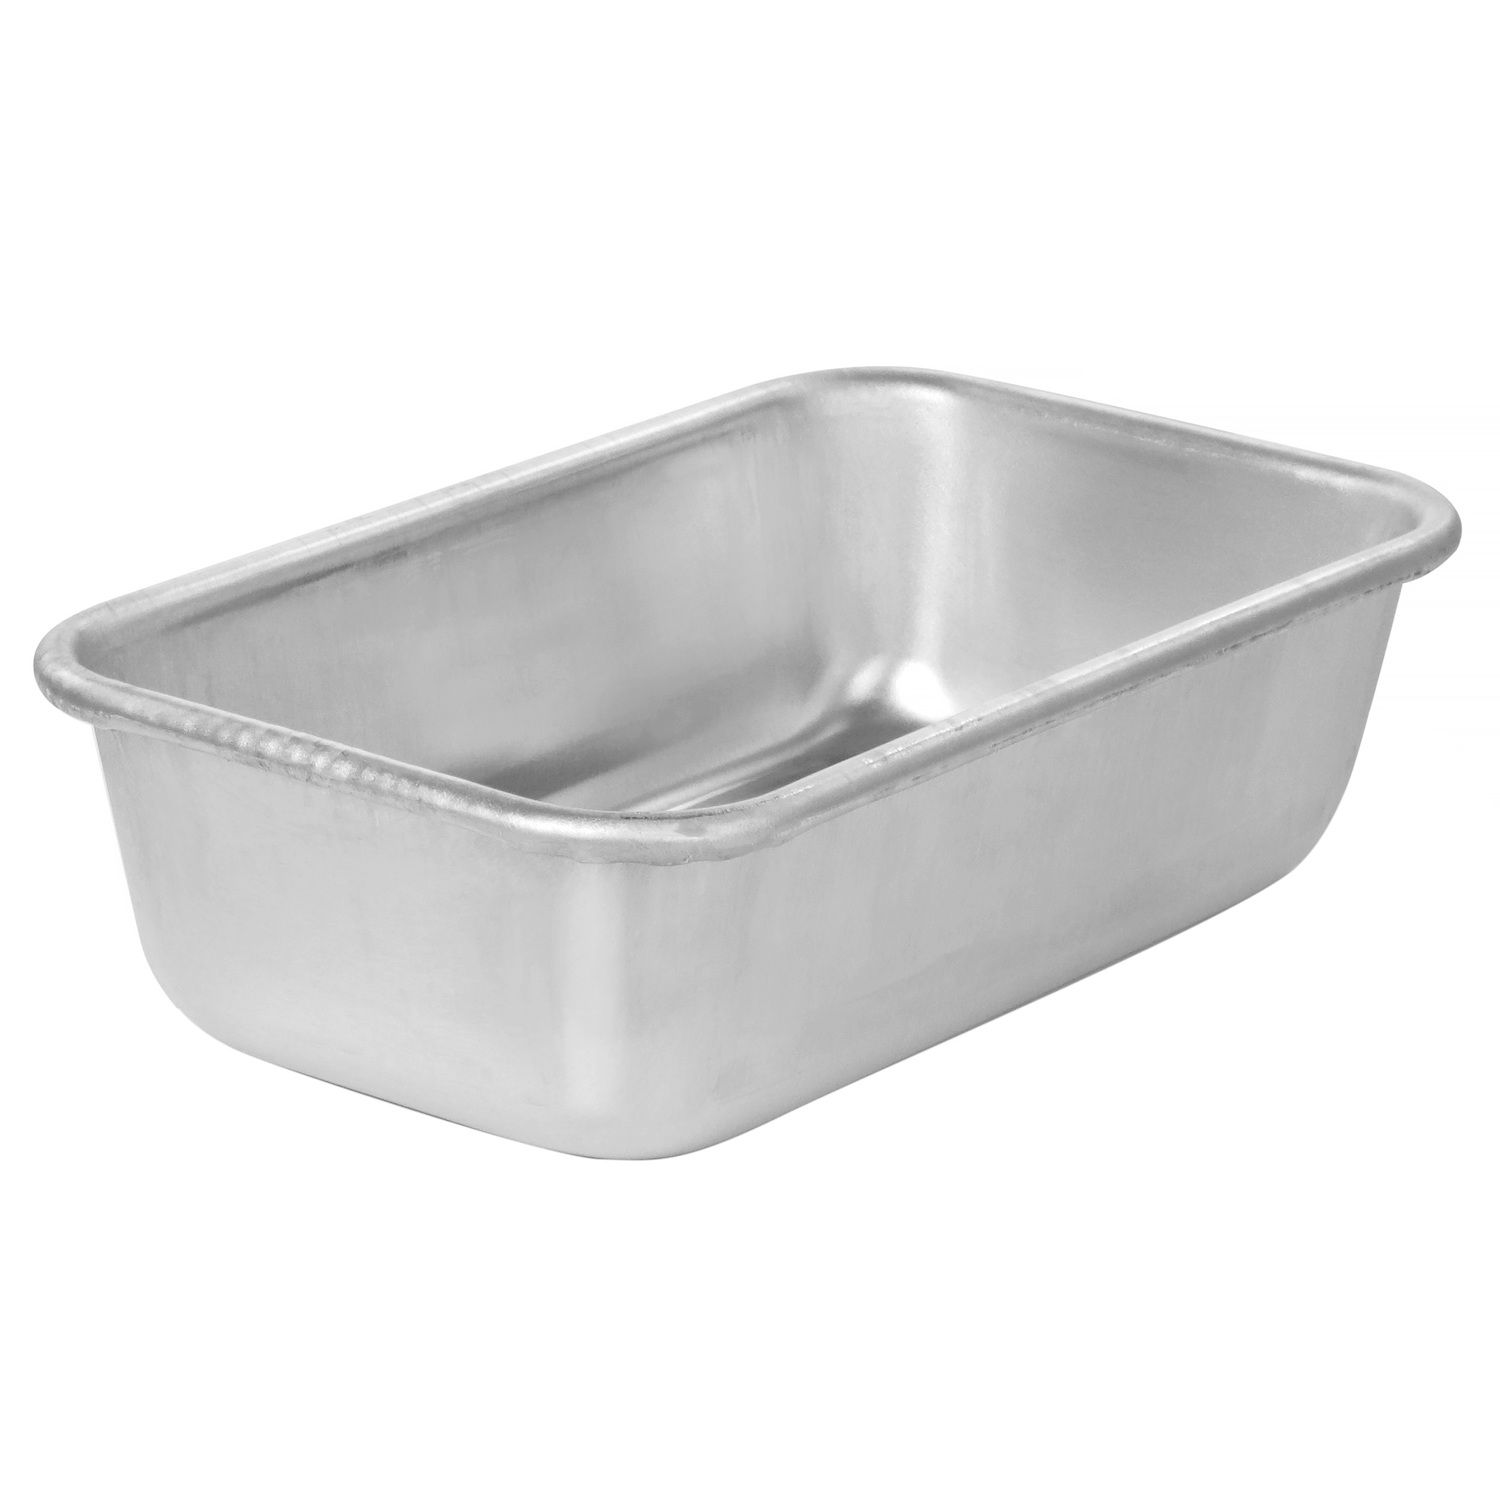 8495 1/2 Size Aluminum Baking Pan, 12-7/8 x 17-3/4